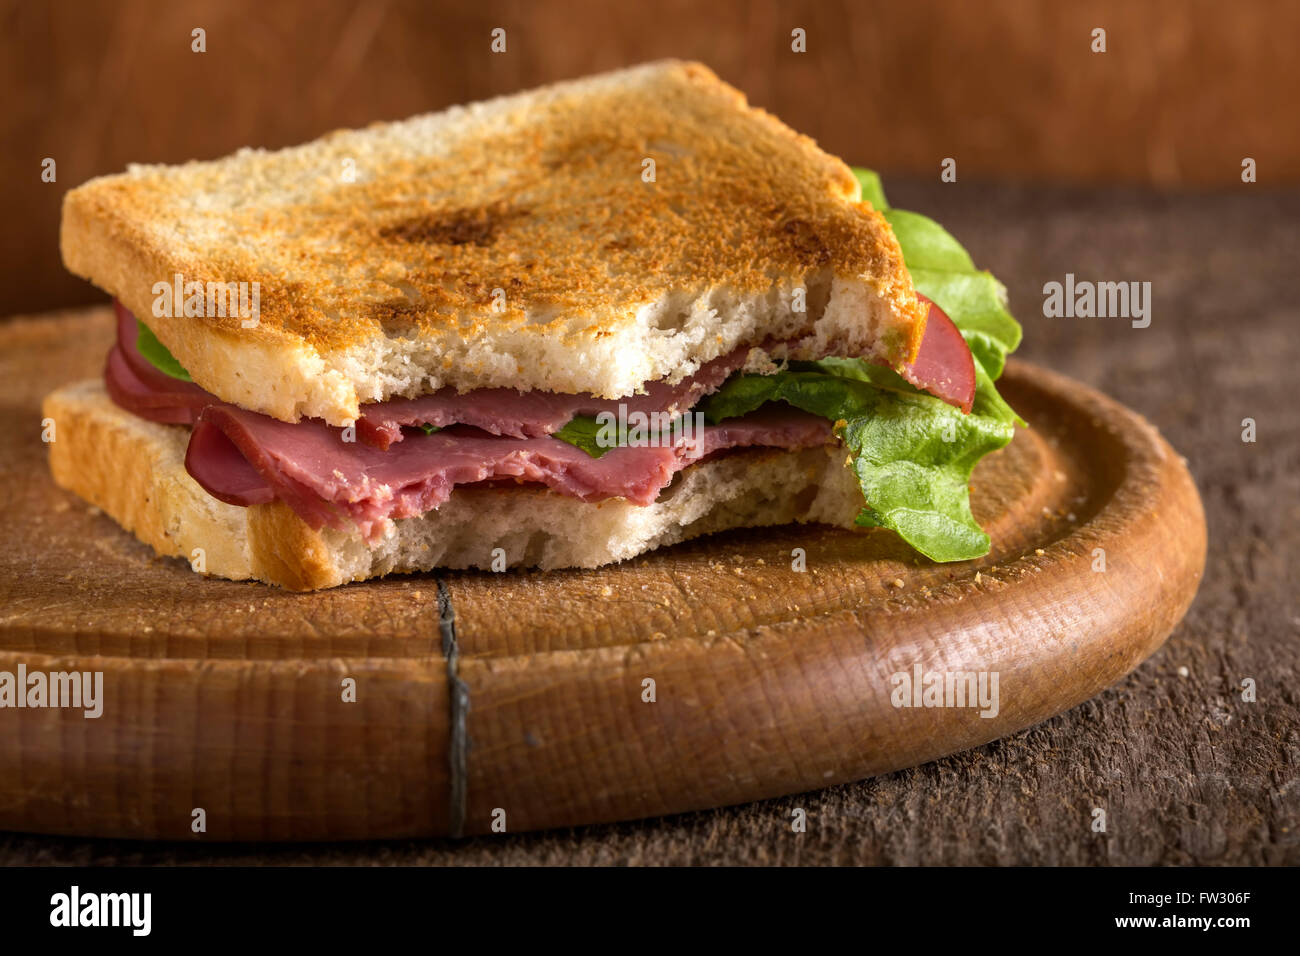 Mordido carne pastrami sandwich con lechuga y tomate sobre fondo de madera Foto de stock